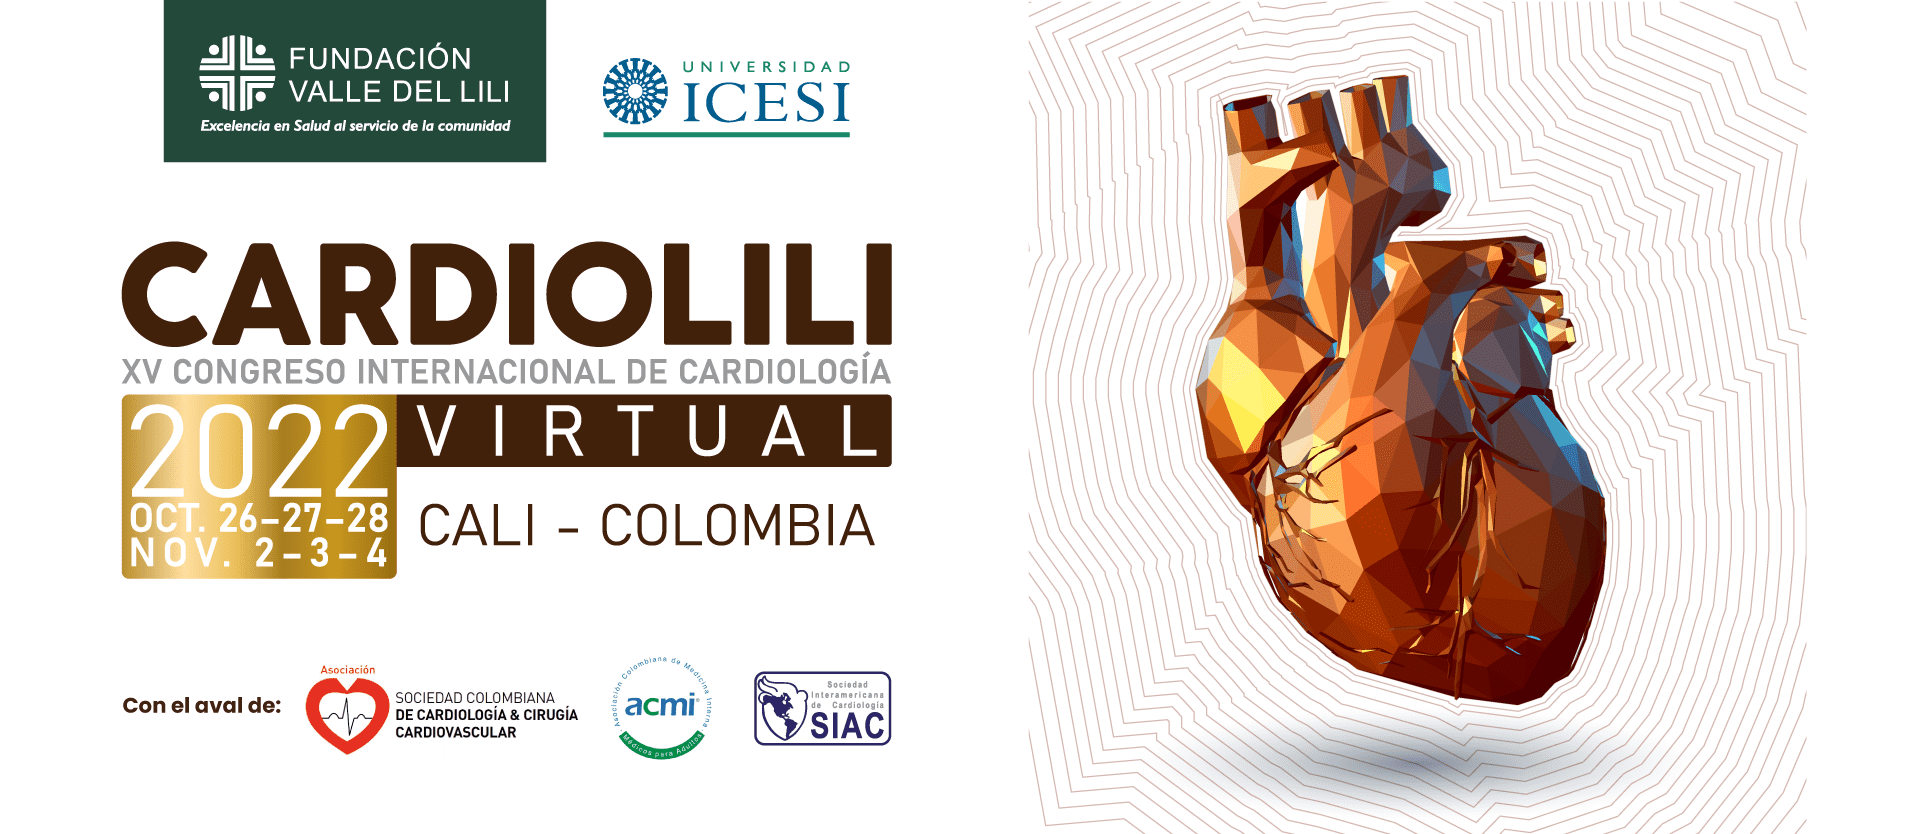 XV Congreso Internacional de Cardiología – CARDIOLILI 2022 Virtual